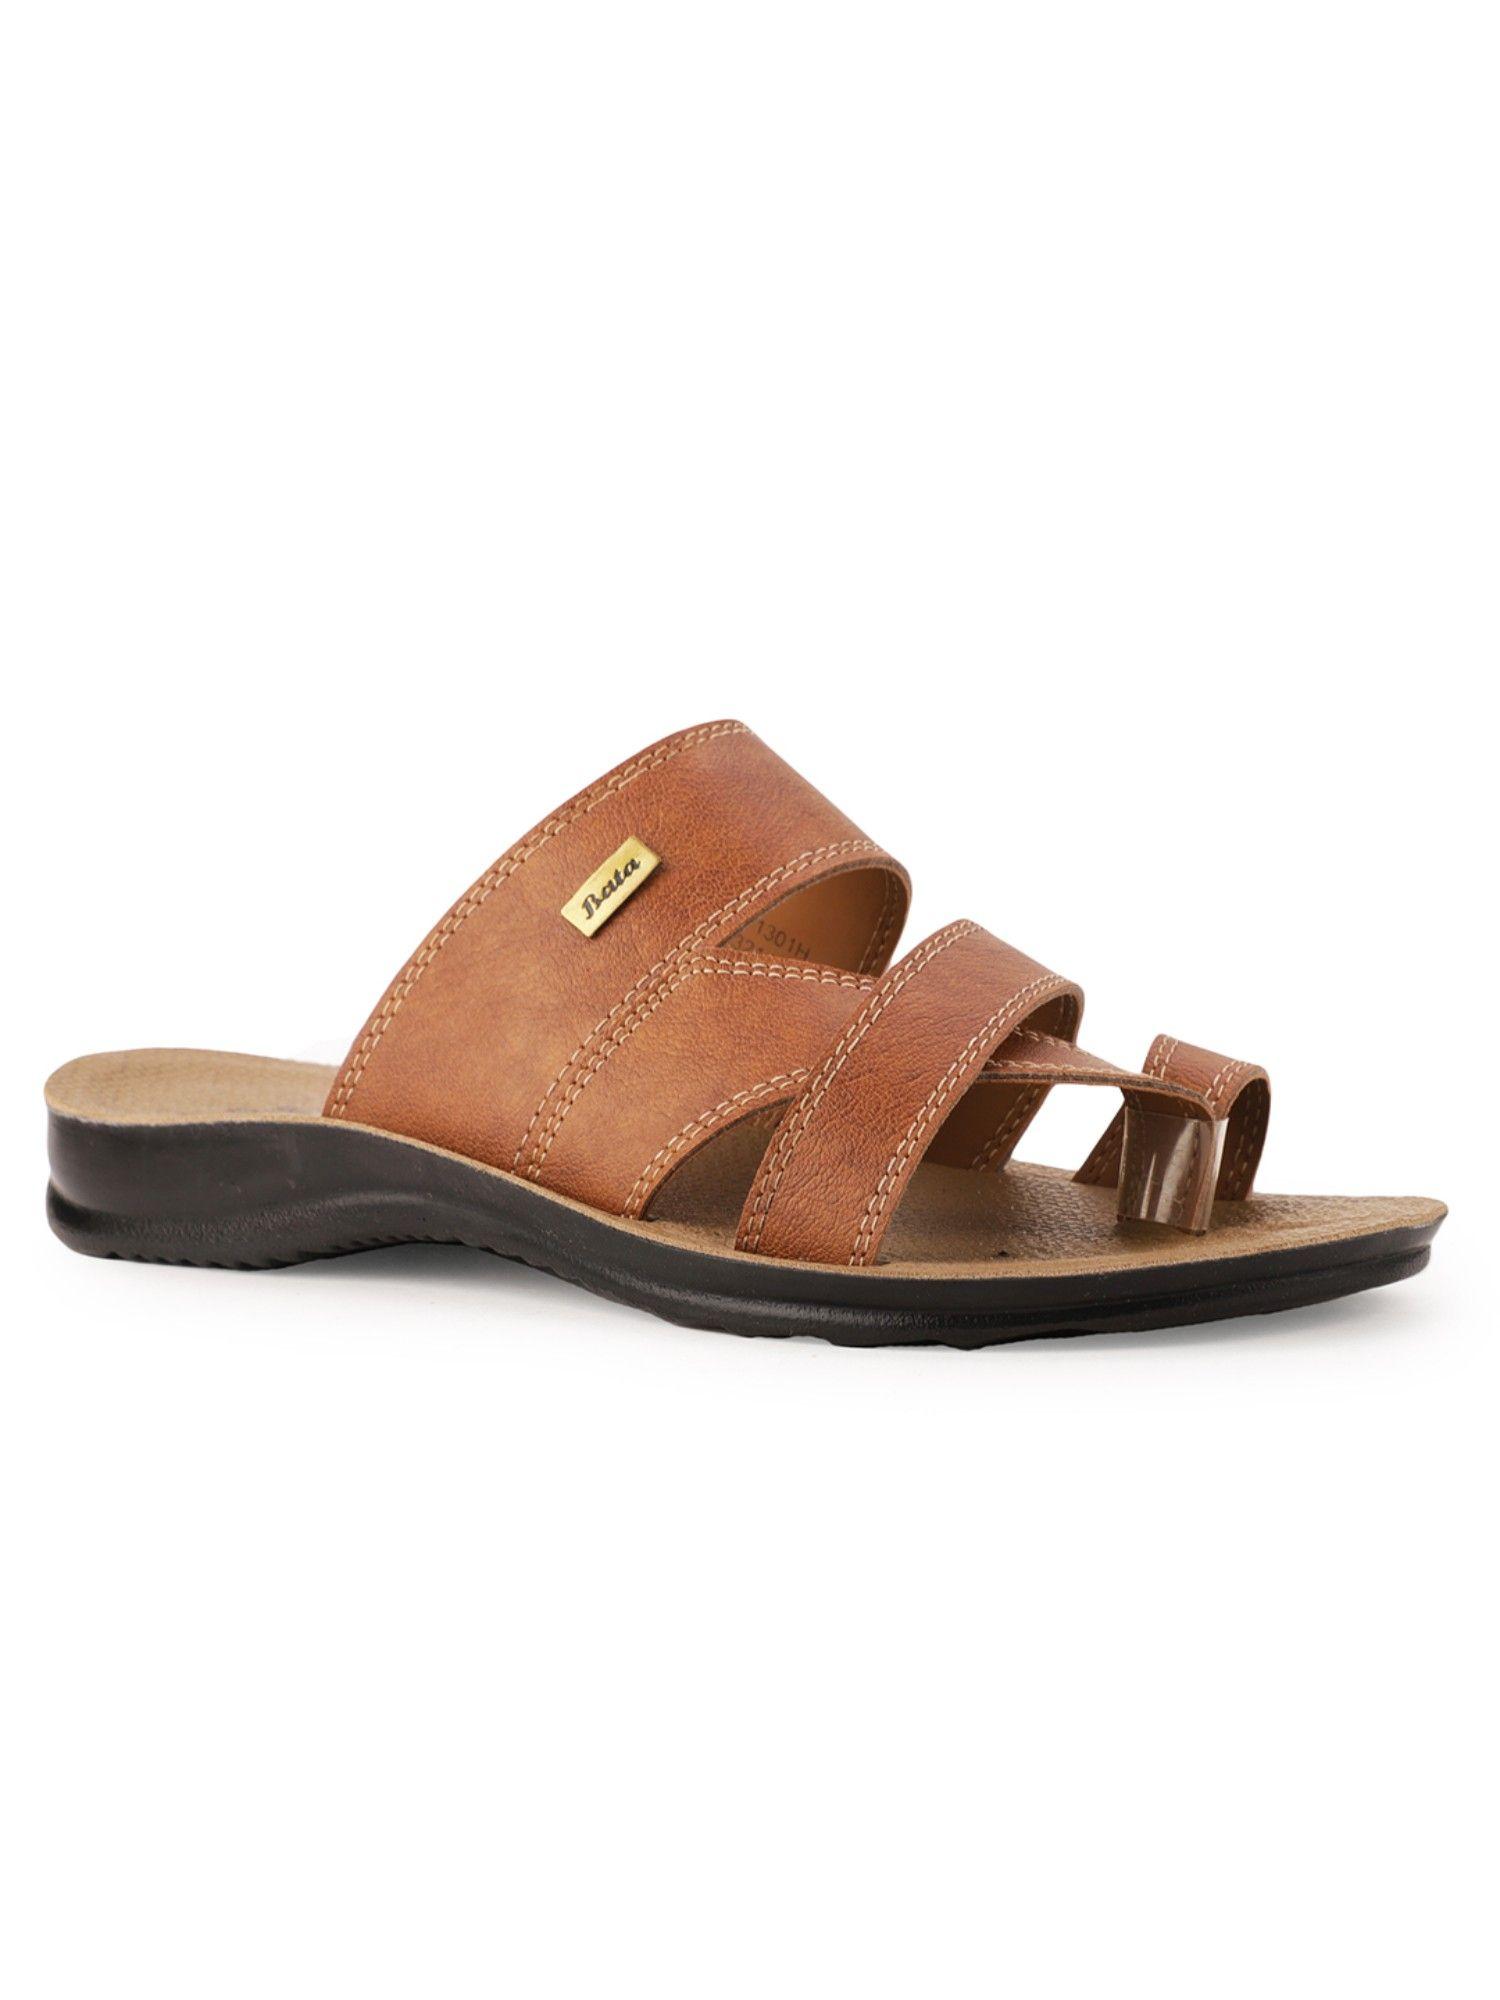 solid-tan-sandals